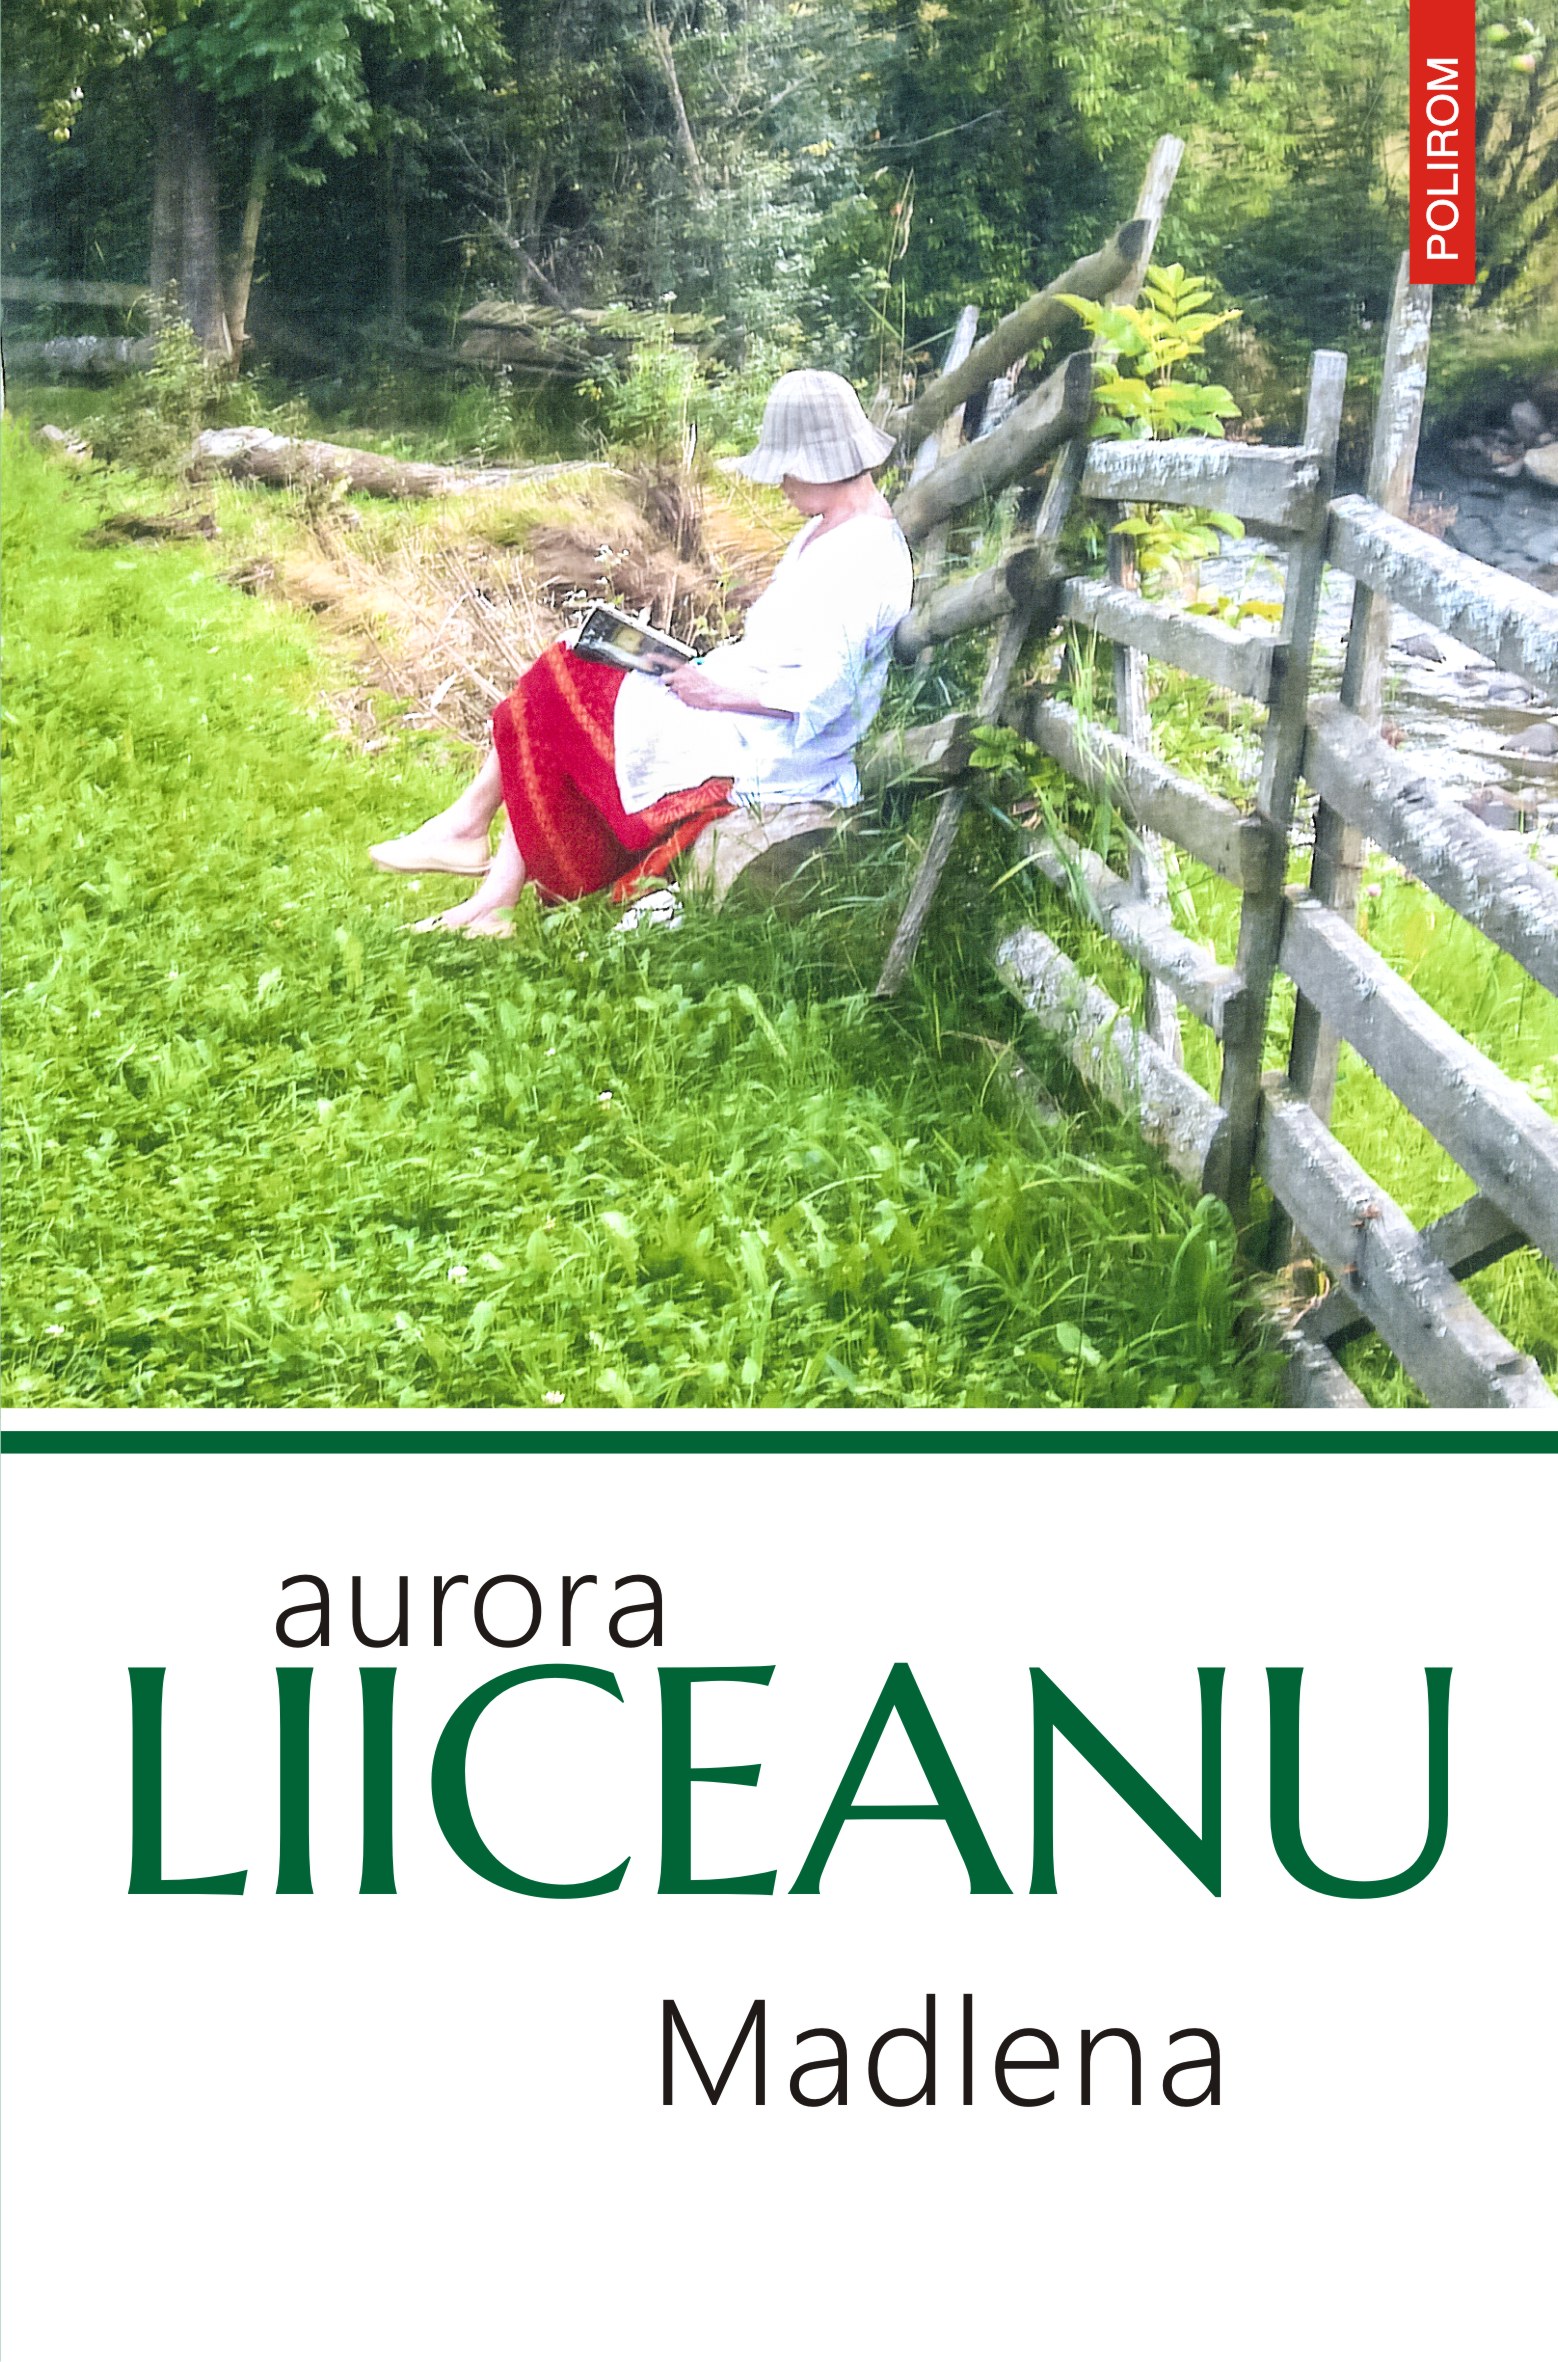 Aurora Liiceanu își întîlnește cititorii la București